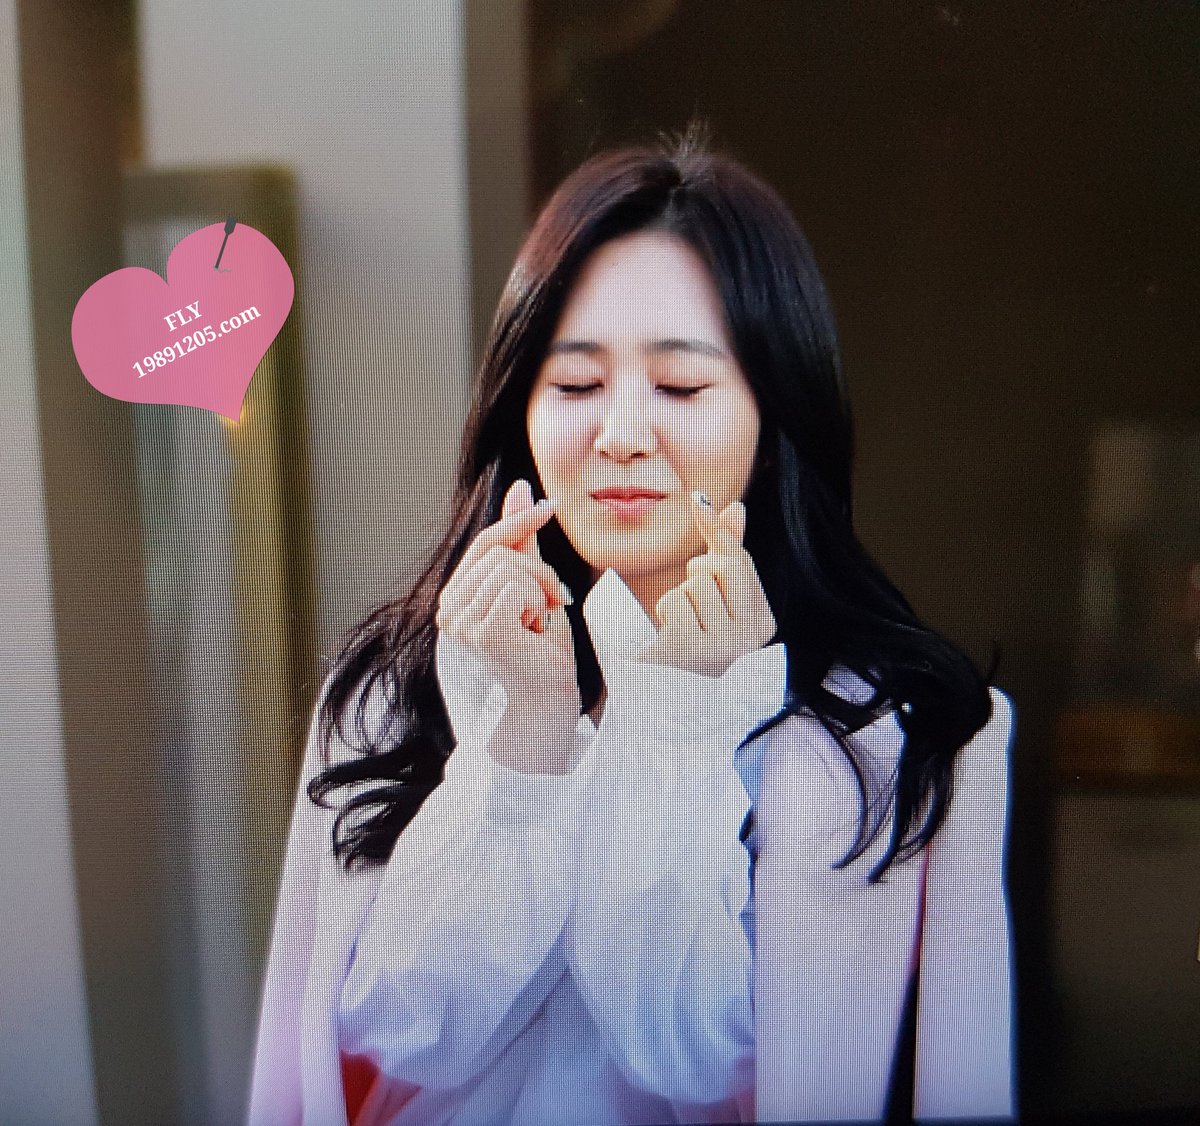 [PIC][09-10-2016]Yuri tham dự buổi Fansign thứ 2 cho thương hiệu nước hoa "BVLGARI Rose Goldea" tại Myeongdong Lotte Duty Free vào chiều nay - Page 2 CuT36eIUMAAzqOi